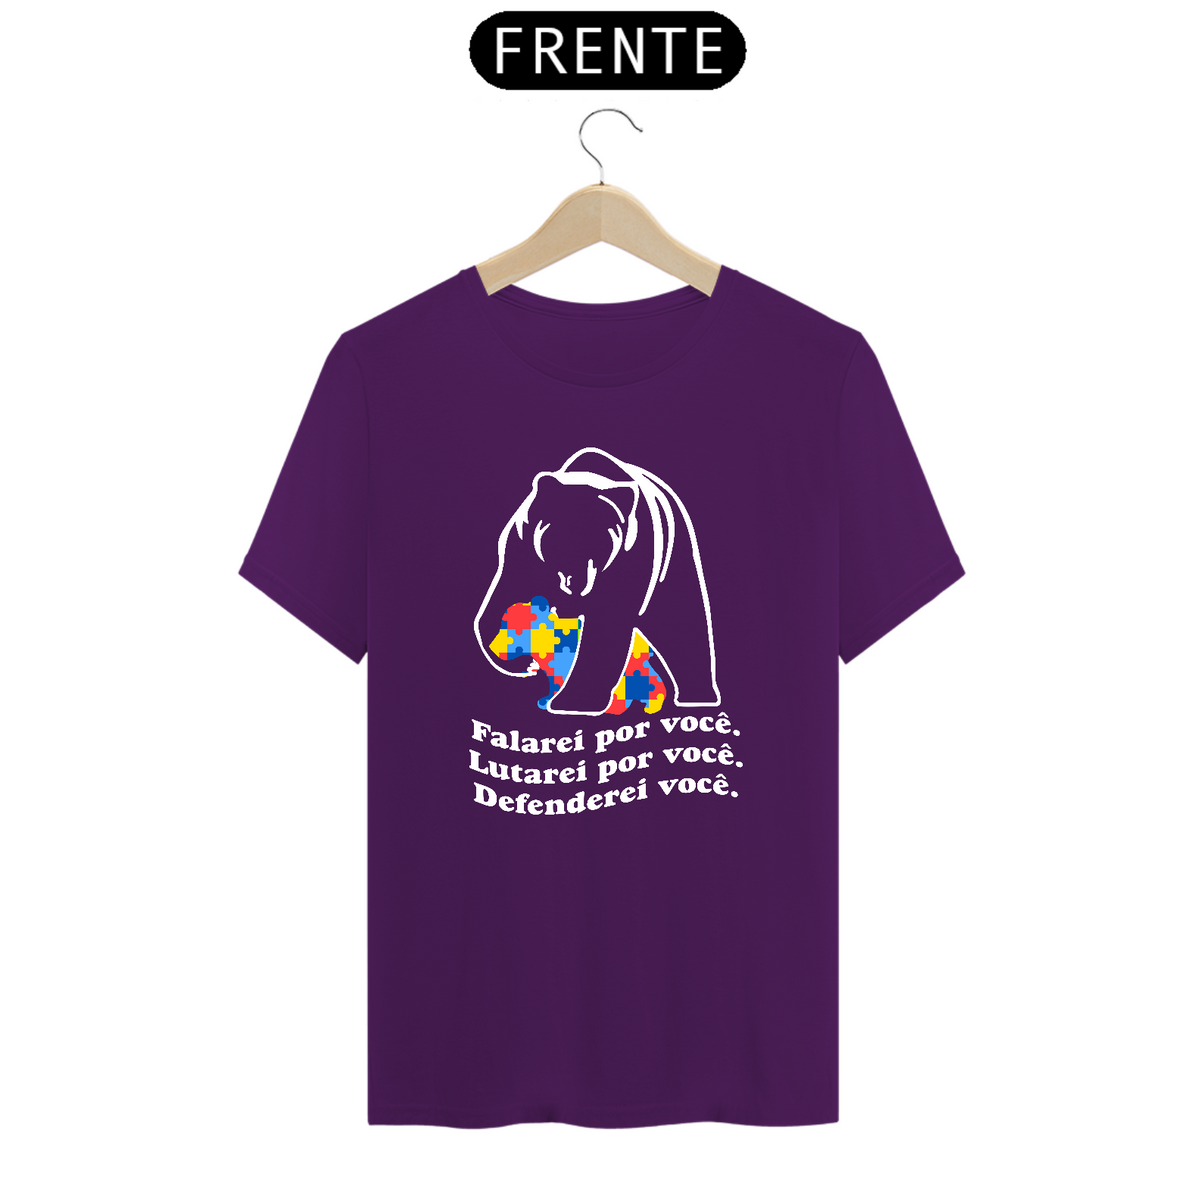 Nome do produto: T-shirt - autismo (Falarei por você, lutarei por você e defenderei você)